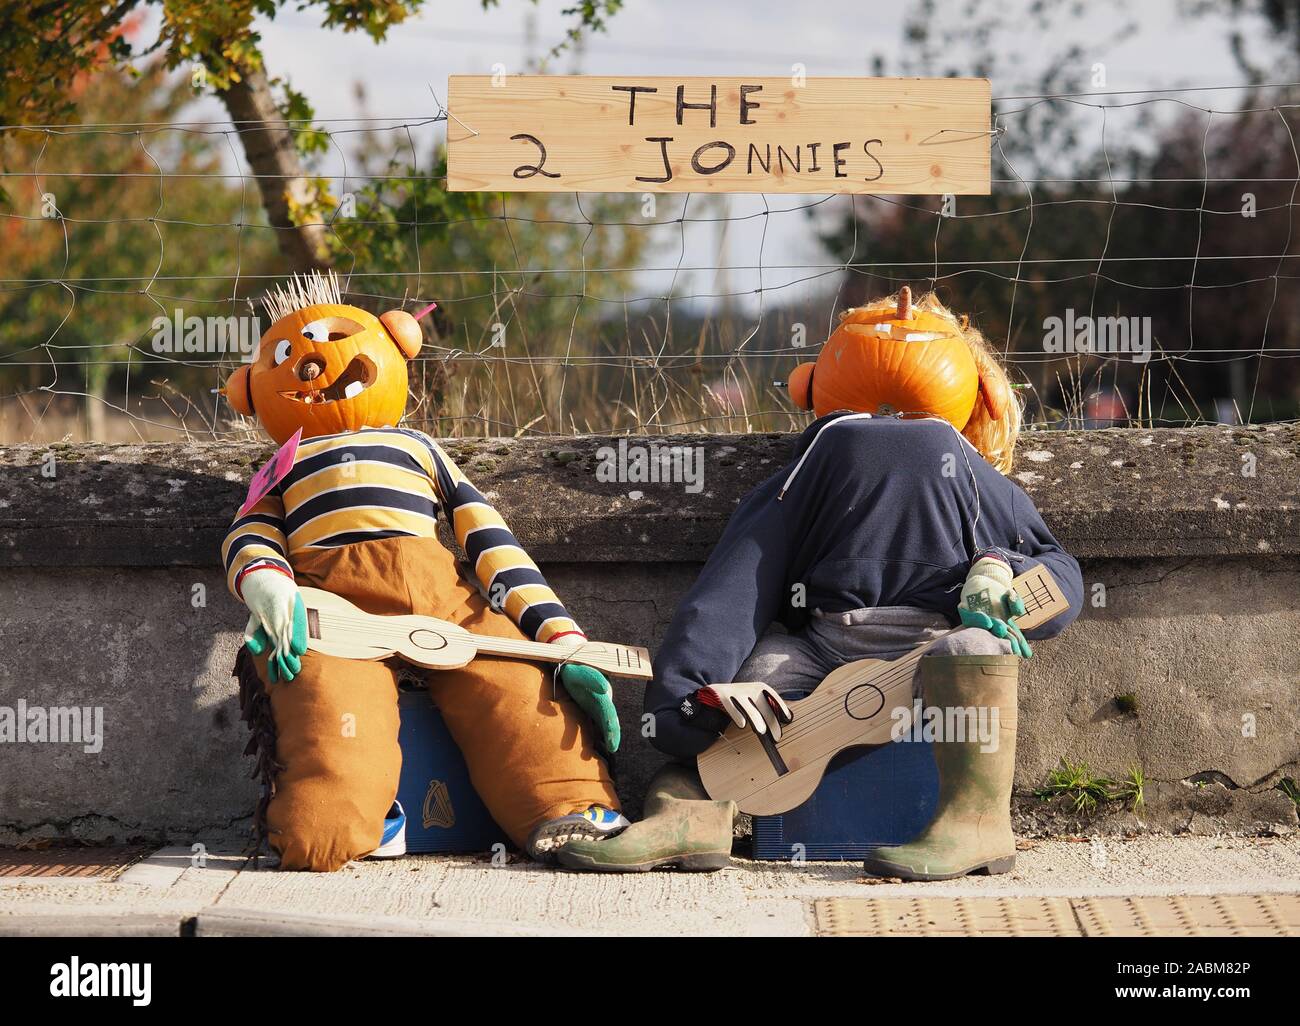 Les épouvantails d'Halloween de comédie duo 'Les 2 johnnies' à New Inn, Tipperary, Irlande Banque D'Images